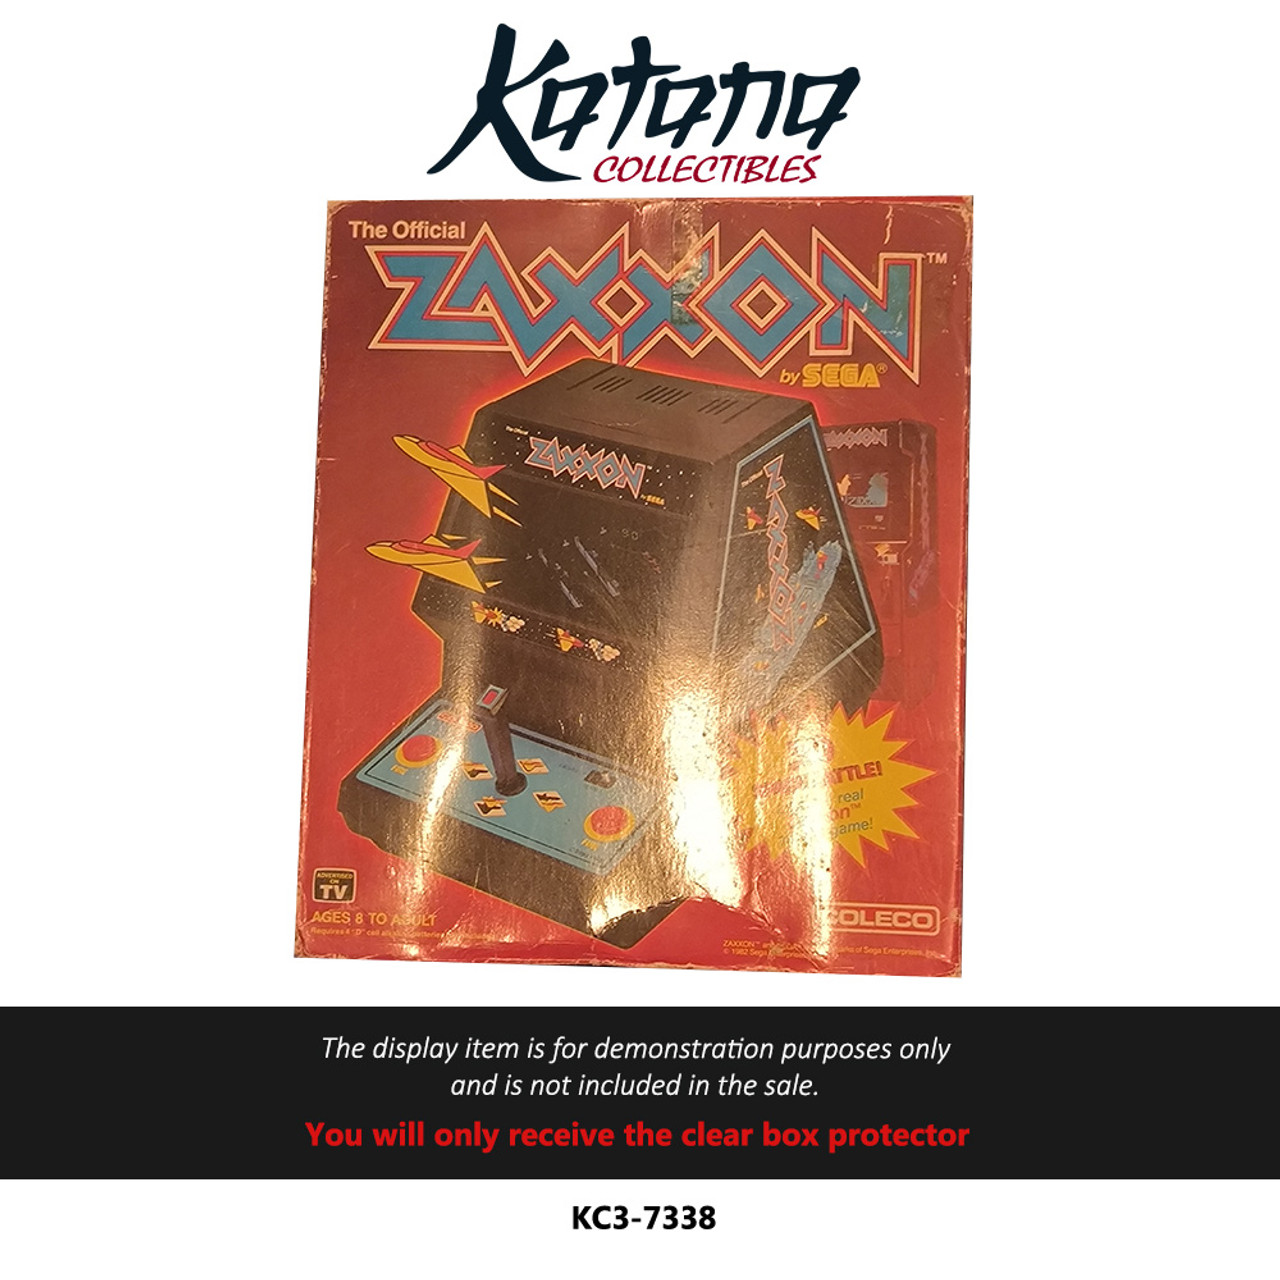 Katana Collectibles Protector For Zaxxon Coleco